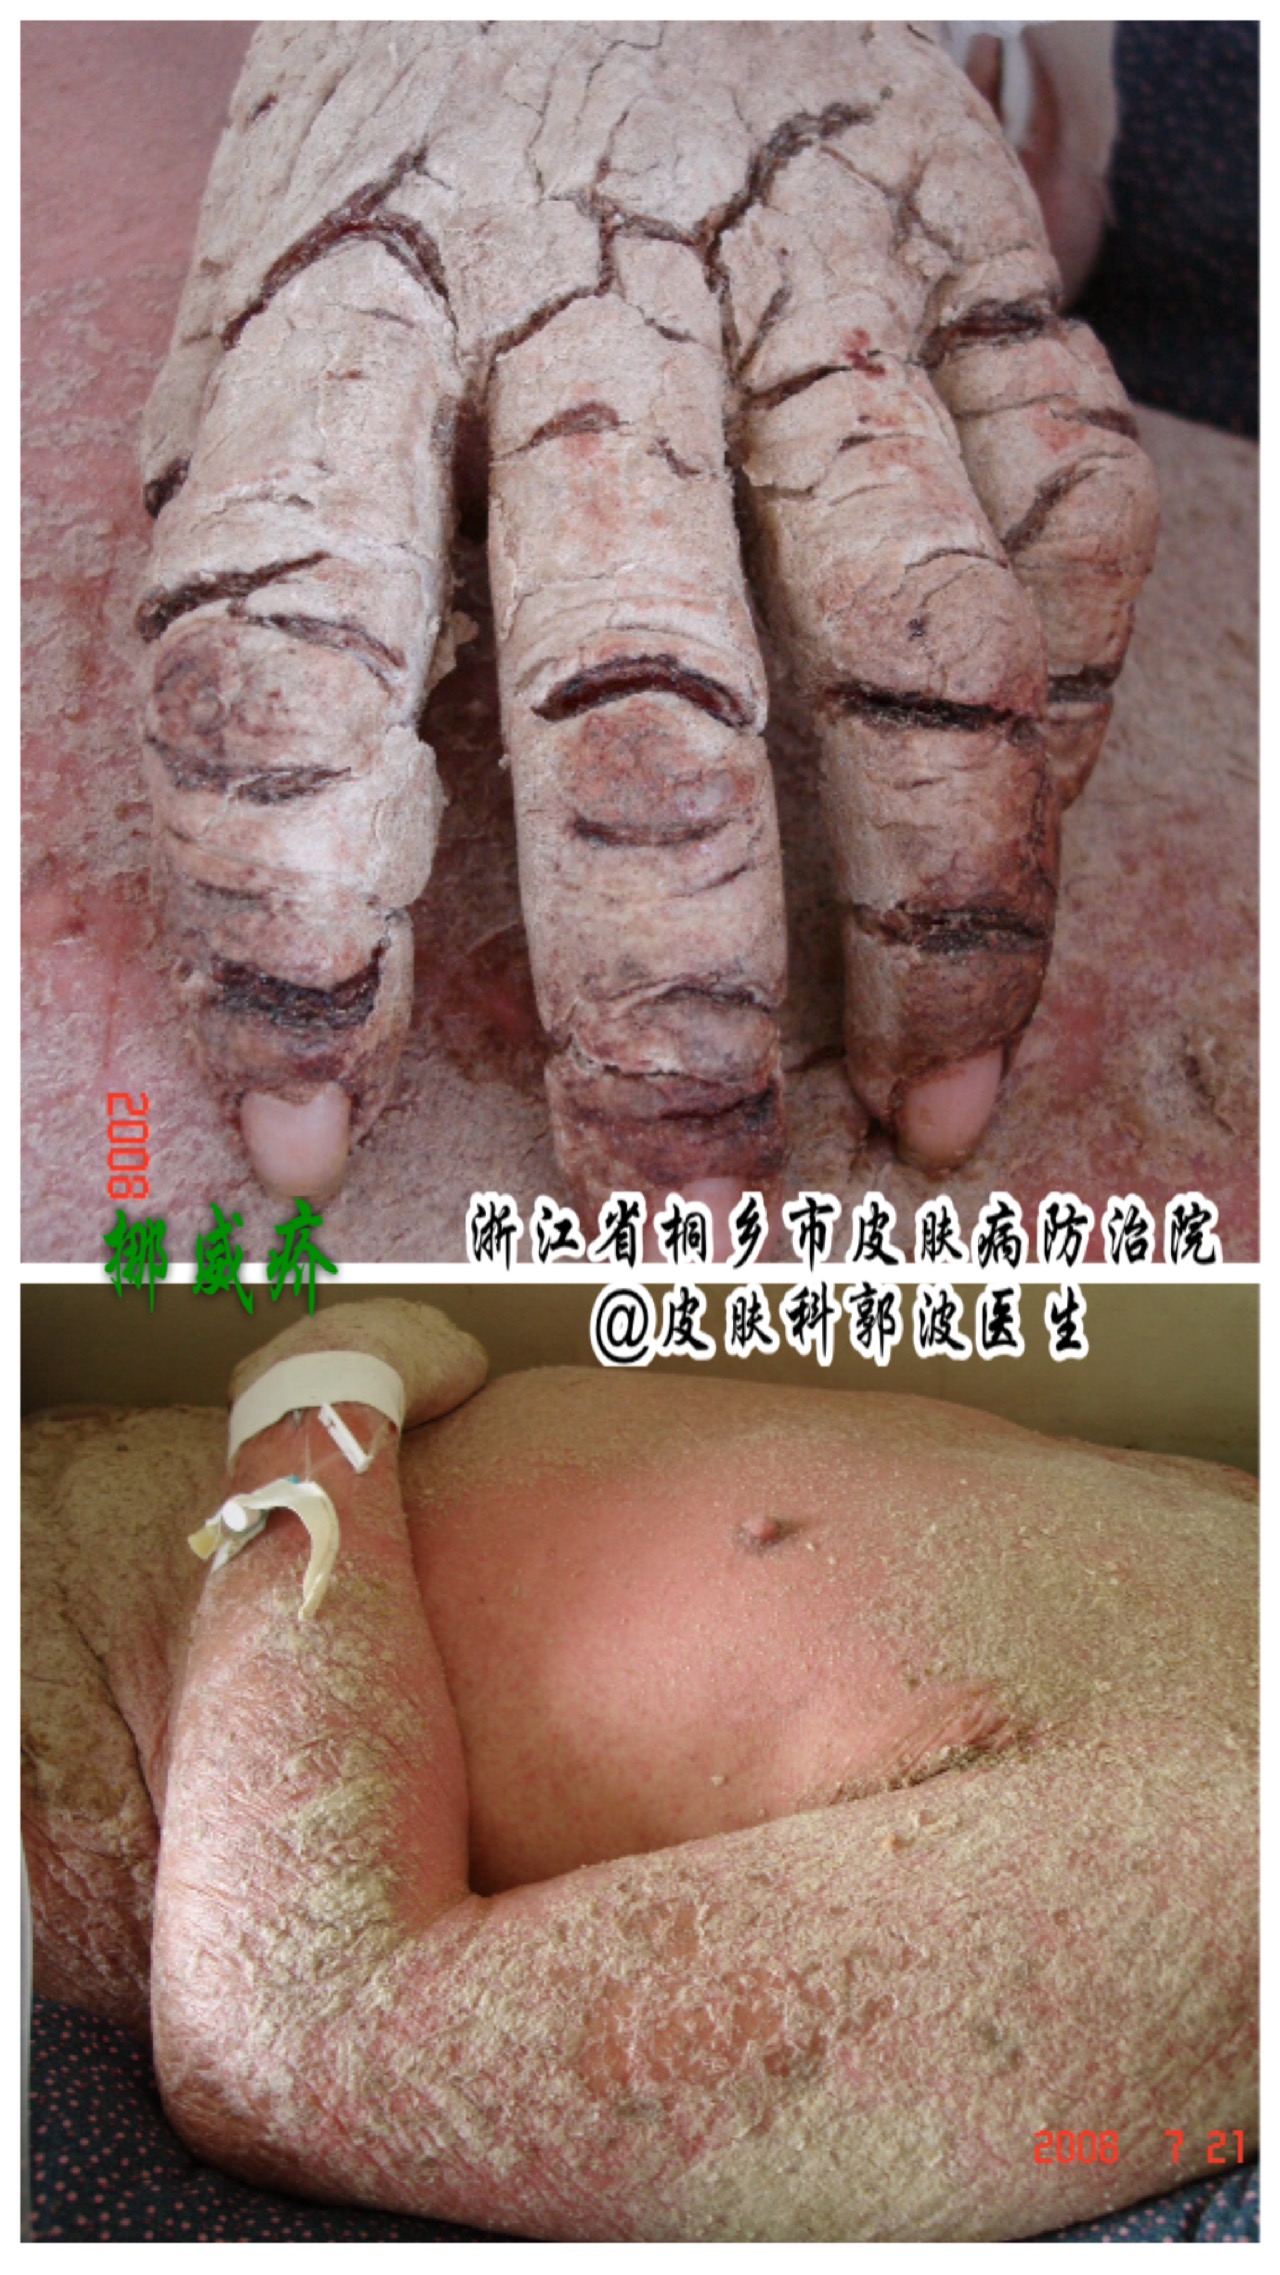 疥虫感染睾丸的图片图片